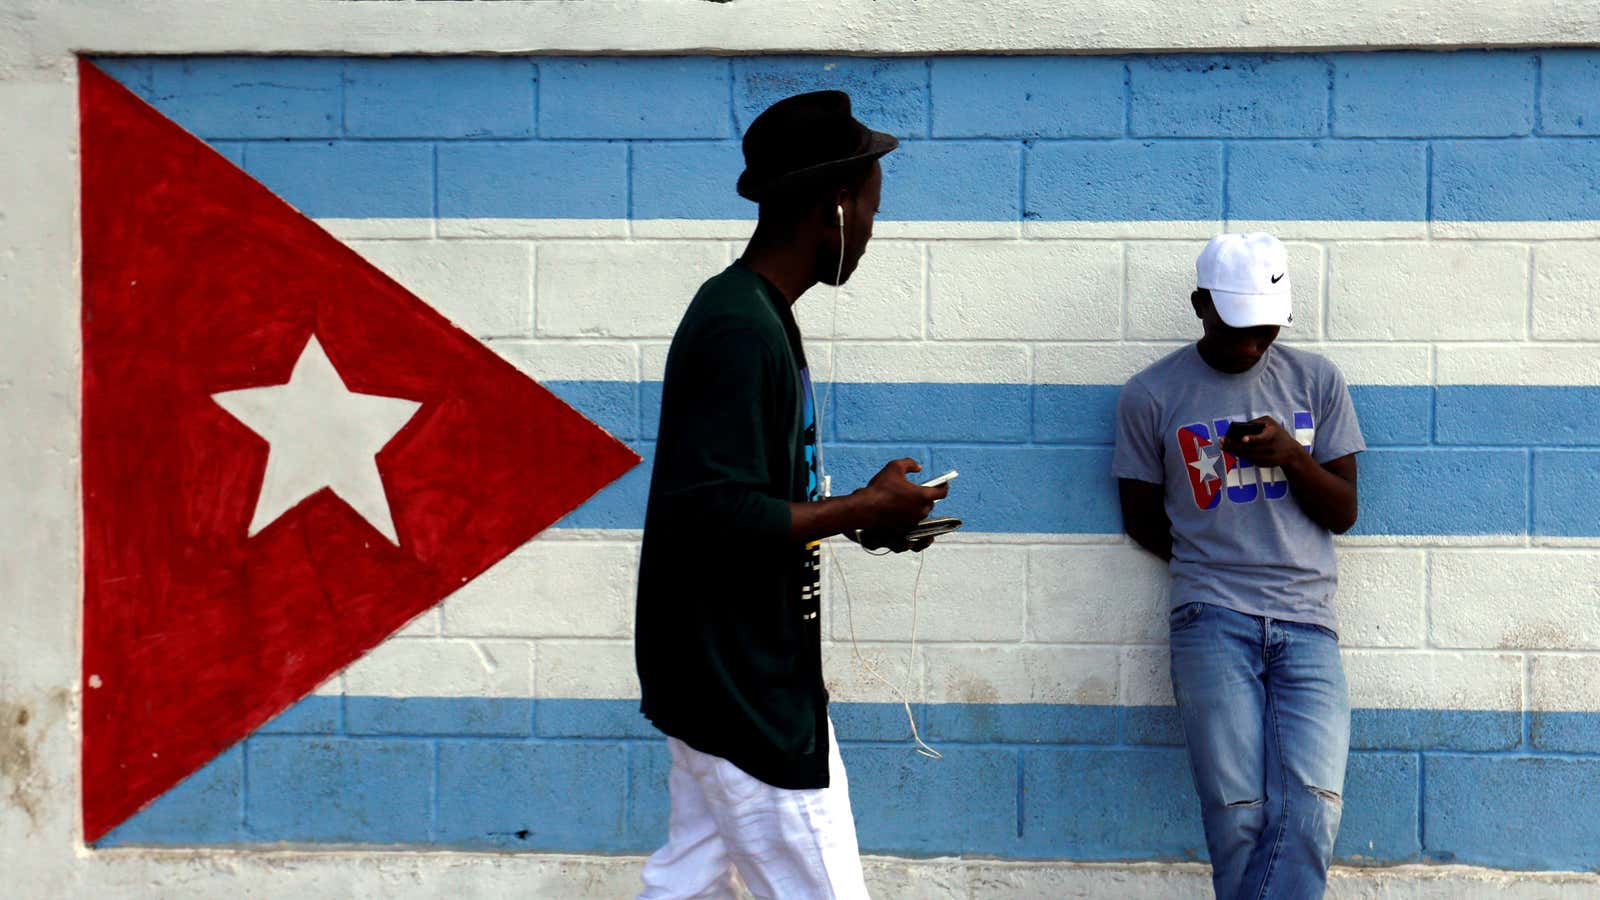 The future of Cuba.